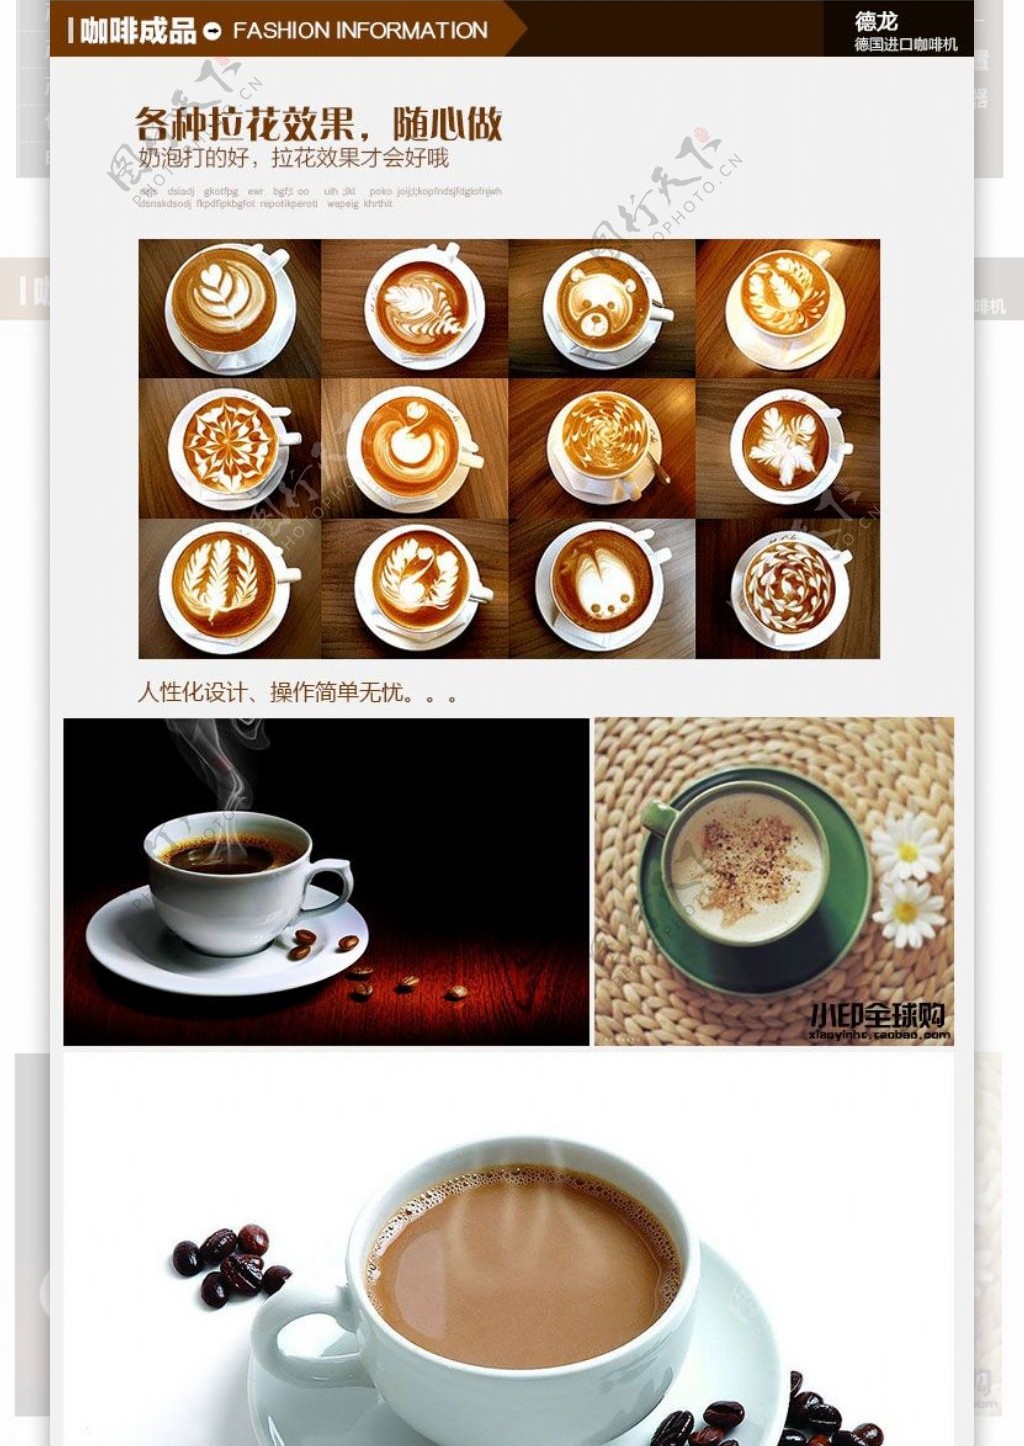 咖啡机详情淘宝详情详情页设计